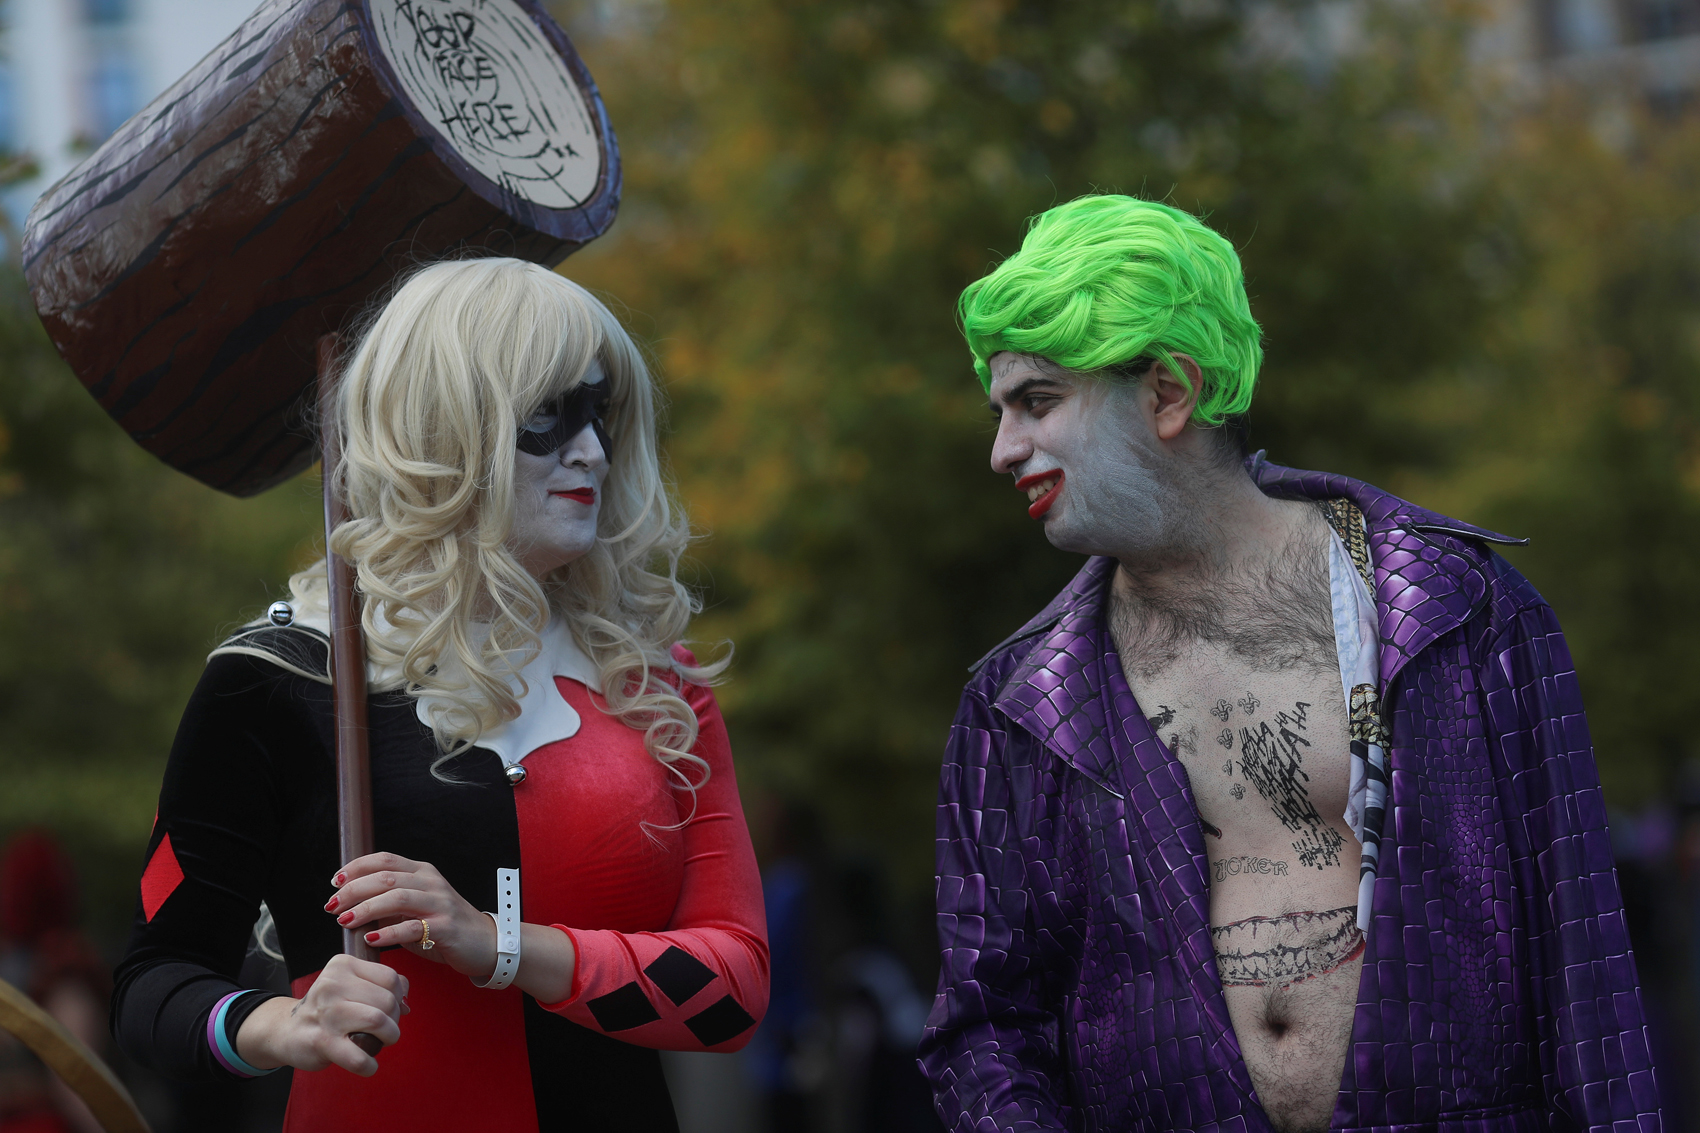 Superhéroes se mezclan con villanos en inicio de Comic Con en Londres